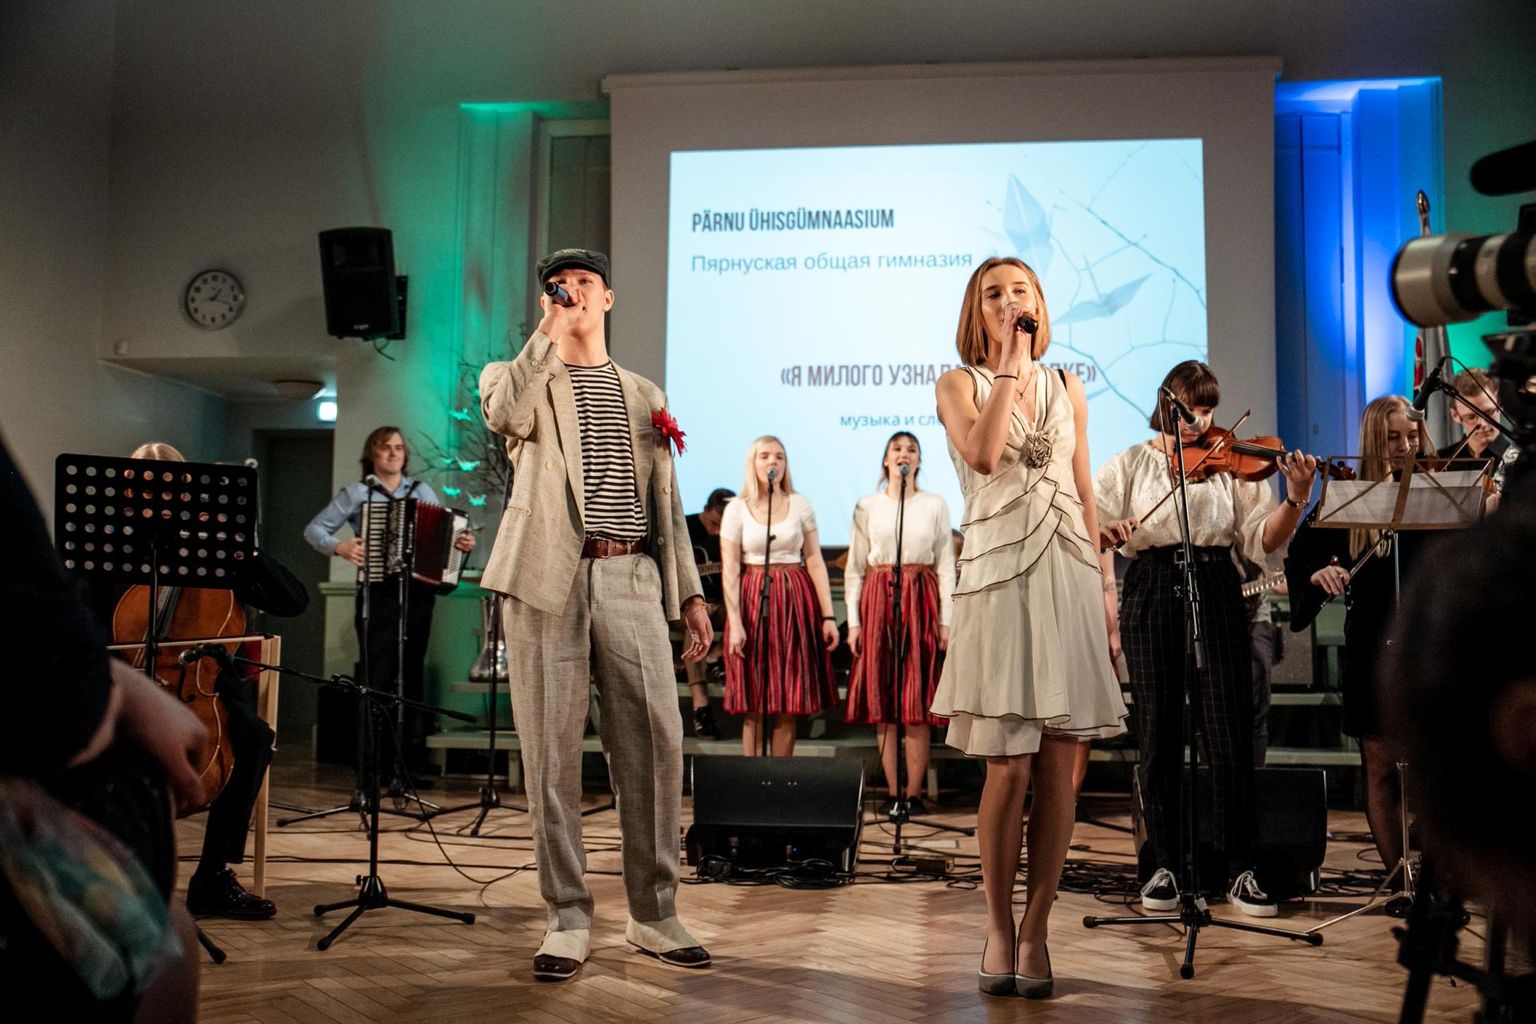 Laulufestivali korraldaja Pärnu ühisgümnaasium astus publiku ette venekeelse lauluga kallimast, kes tunti ära kõnnaku järgi.